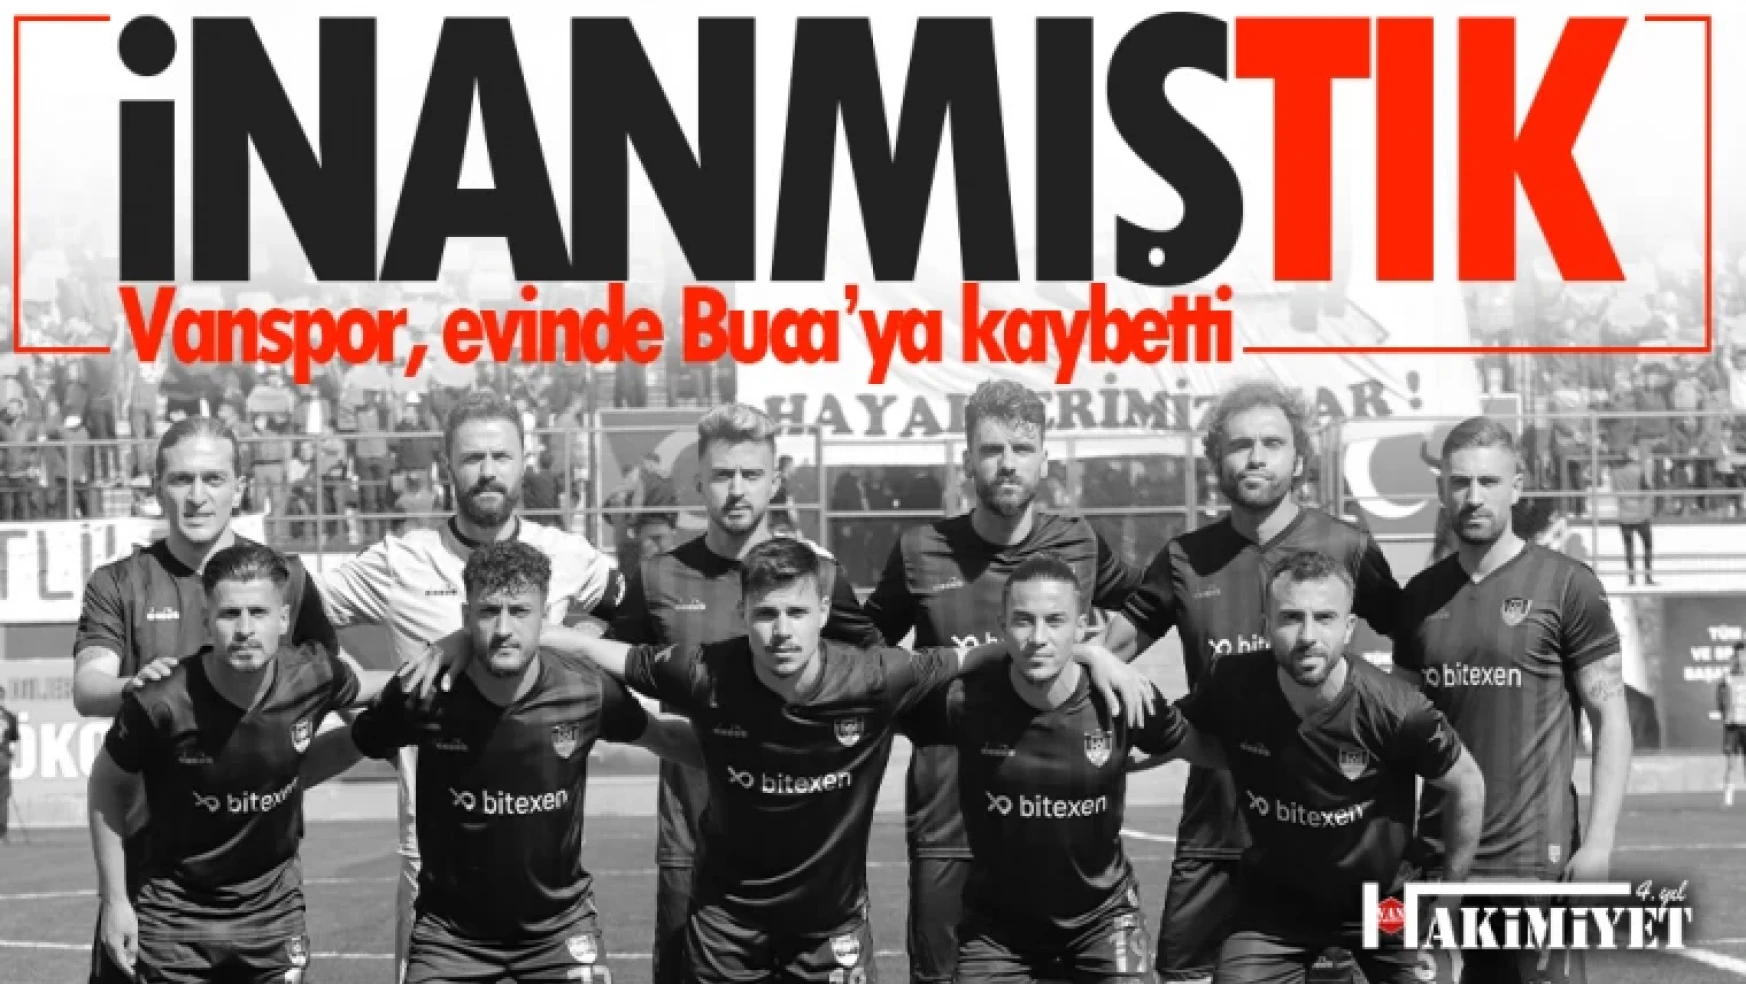 Vanspor FK evinde Bucaspor'a yenildi!